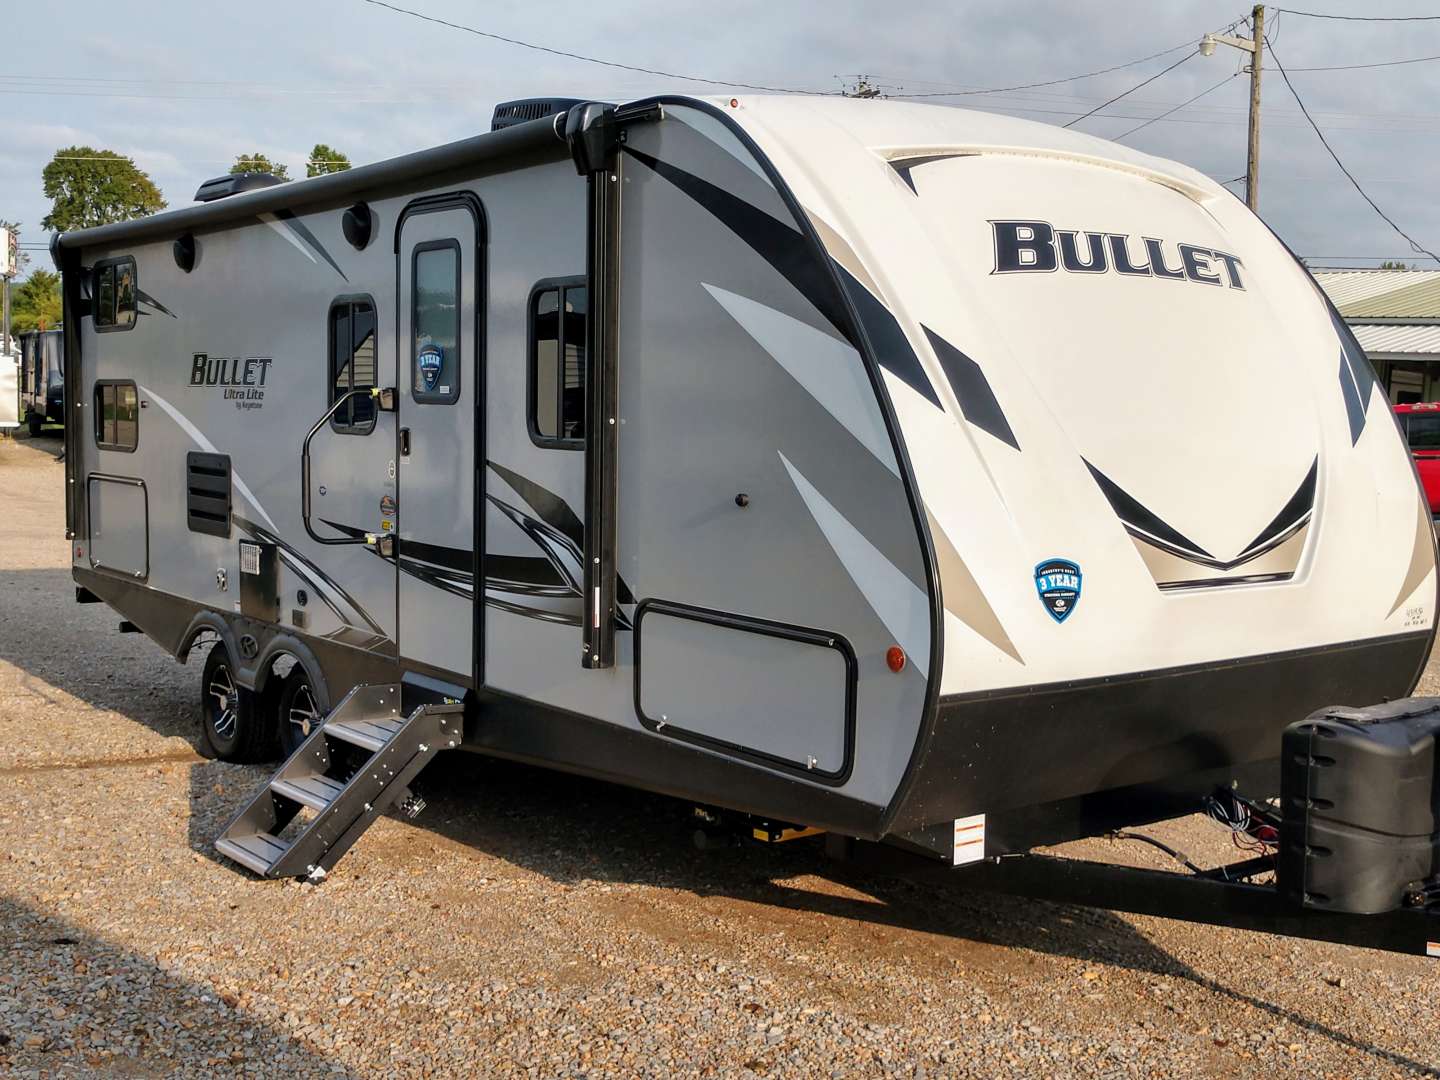 24 ft bullet travel trailer